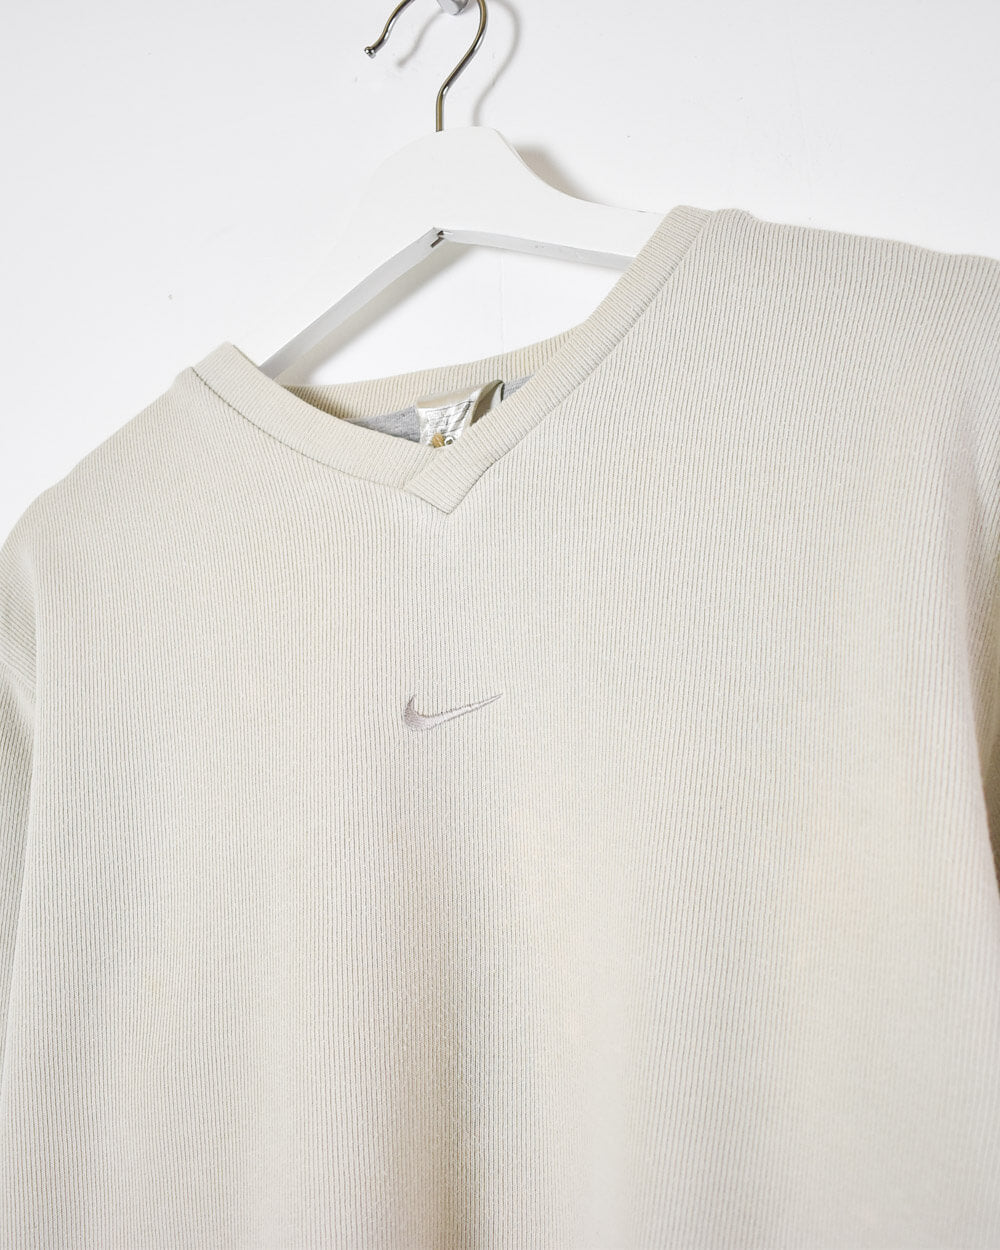 Neutral Nike Women's Sweatshirt - Large 